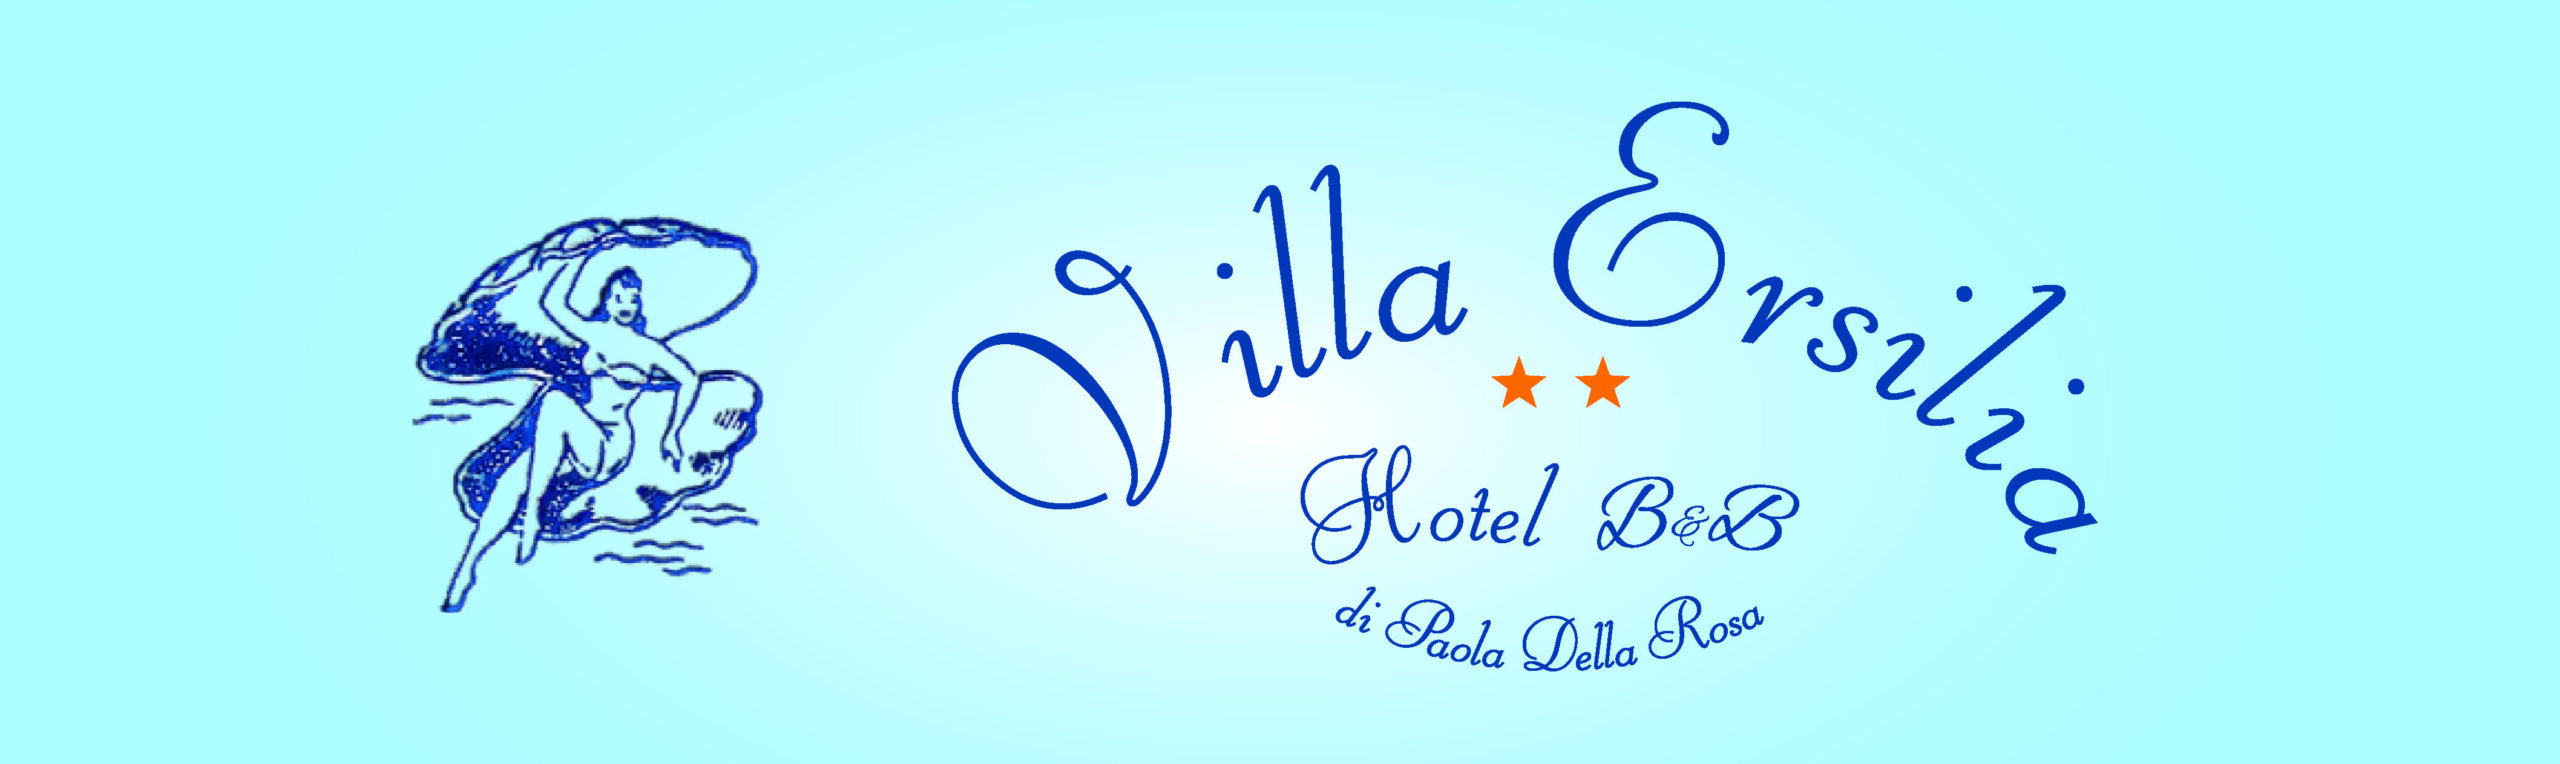 Hotel Villa Ersilia Rimini B&B